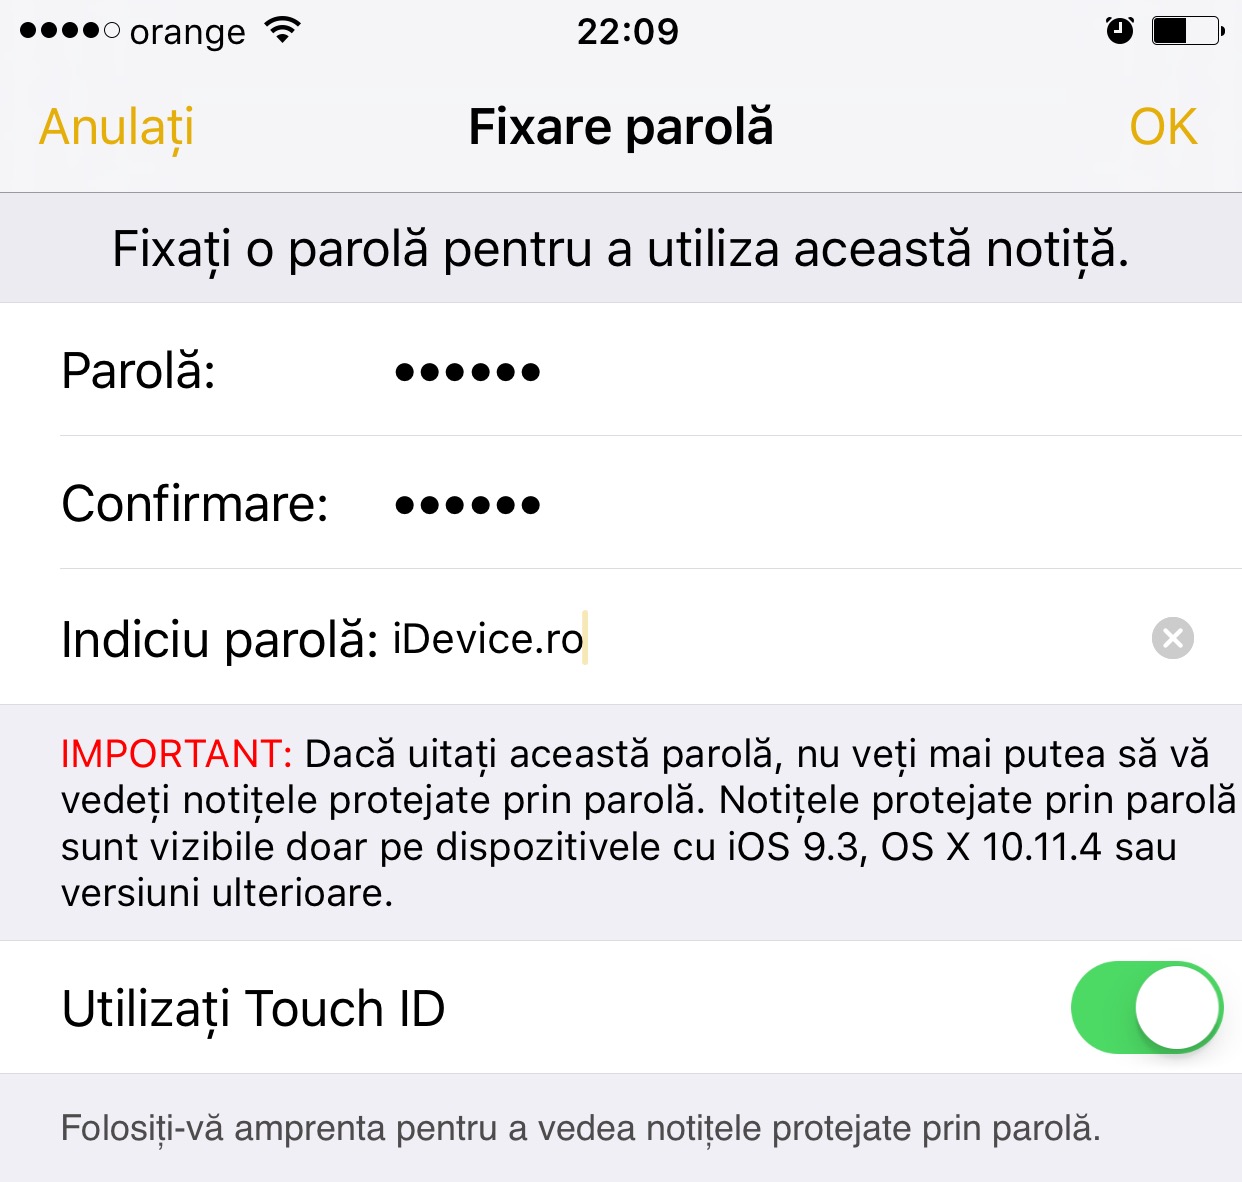 Hinweise zum Passwortschutz für iOS 9.3